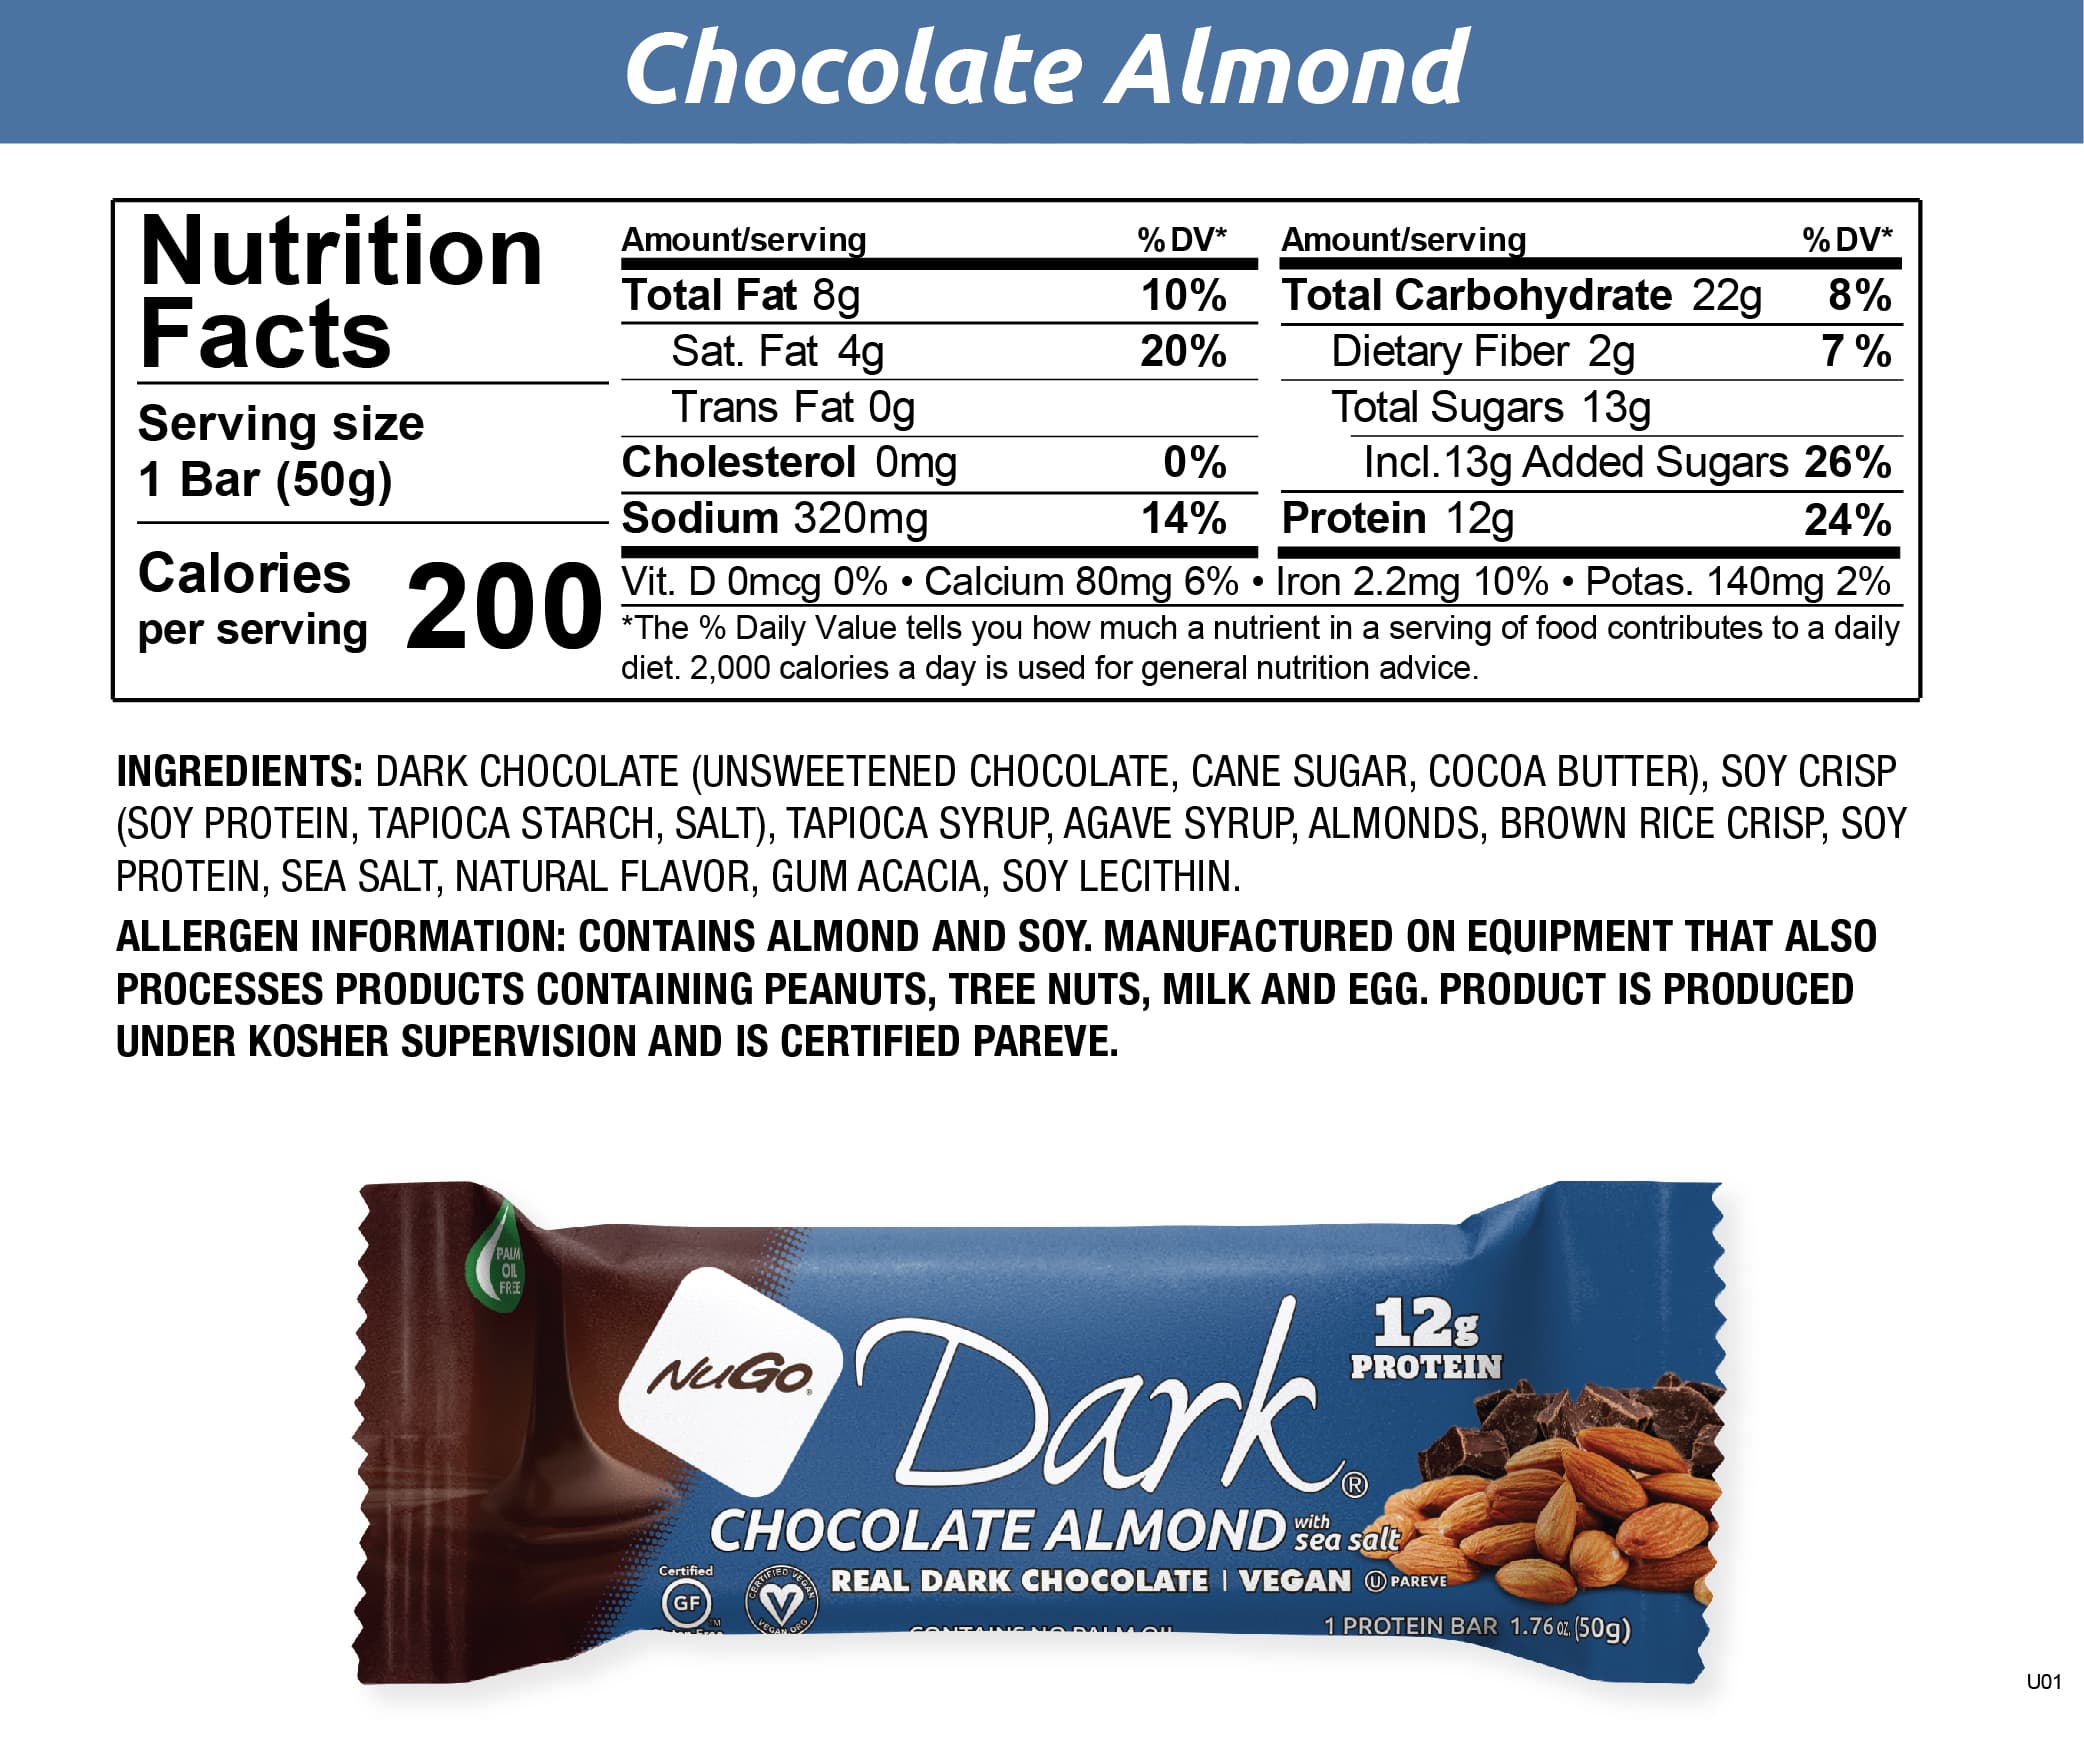 NuGo Dark Chocolate Almond